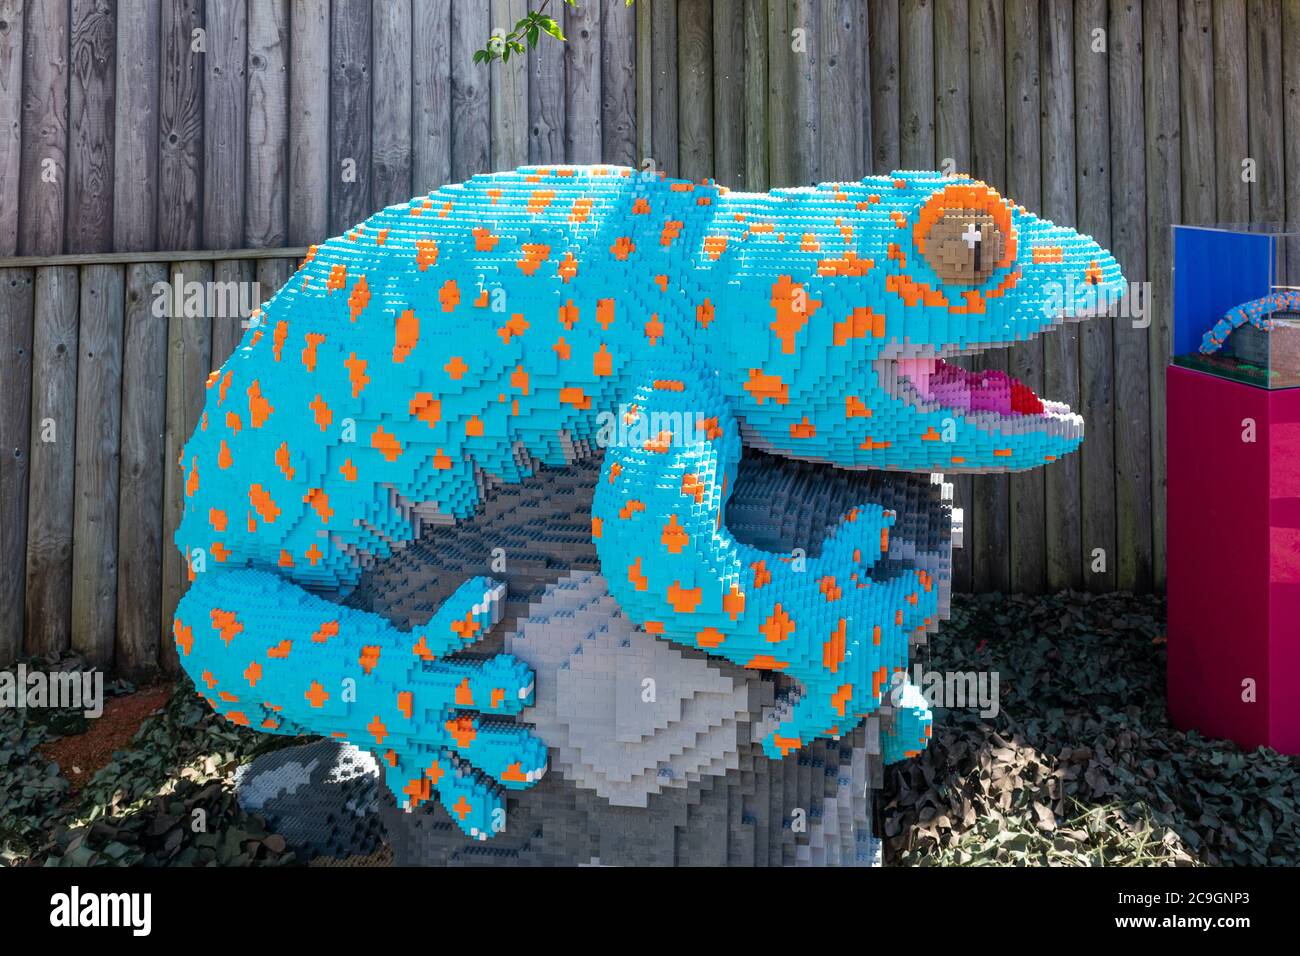 Modelos de animales de ladrillo de lego superdimensionados en el zoológico de Marwell, Reino Unido, un sendero de actividades para niños. Un modelo gecko. Foto de stock